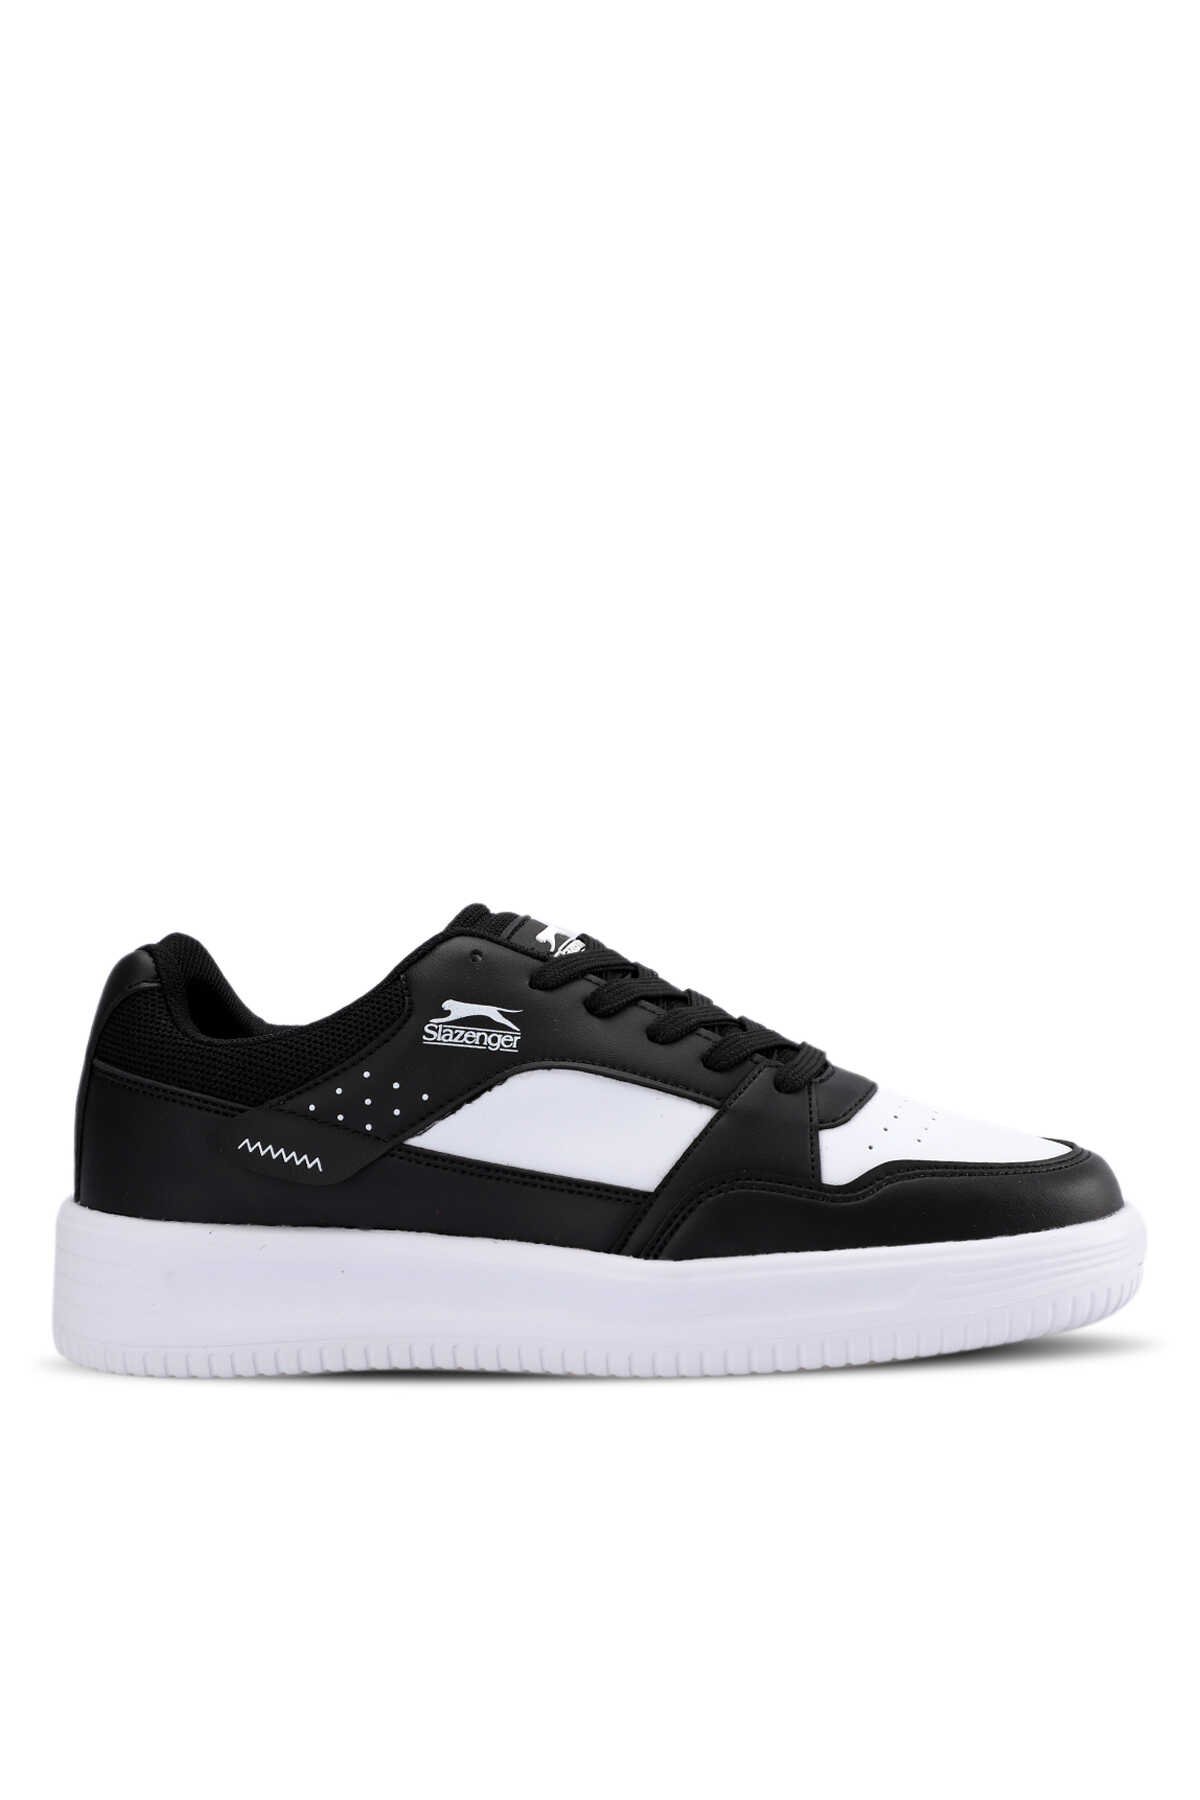 Slazenger - Slazenger LEVSKI Sneaker Erkek Ayakkabı Siyah / Beyaz